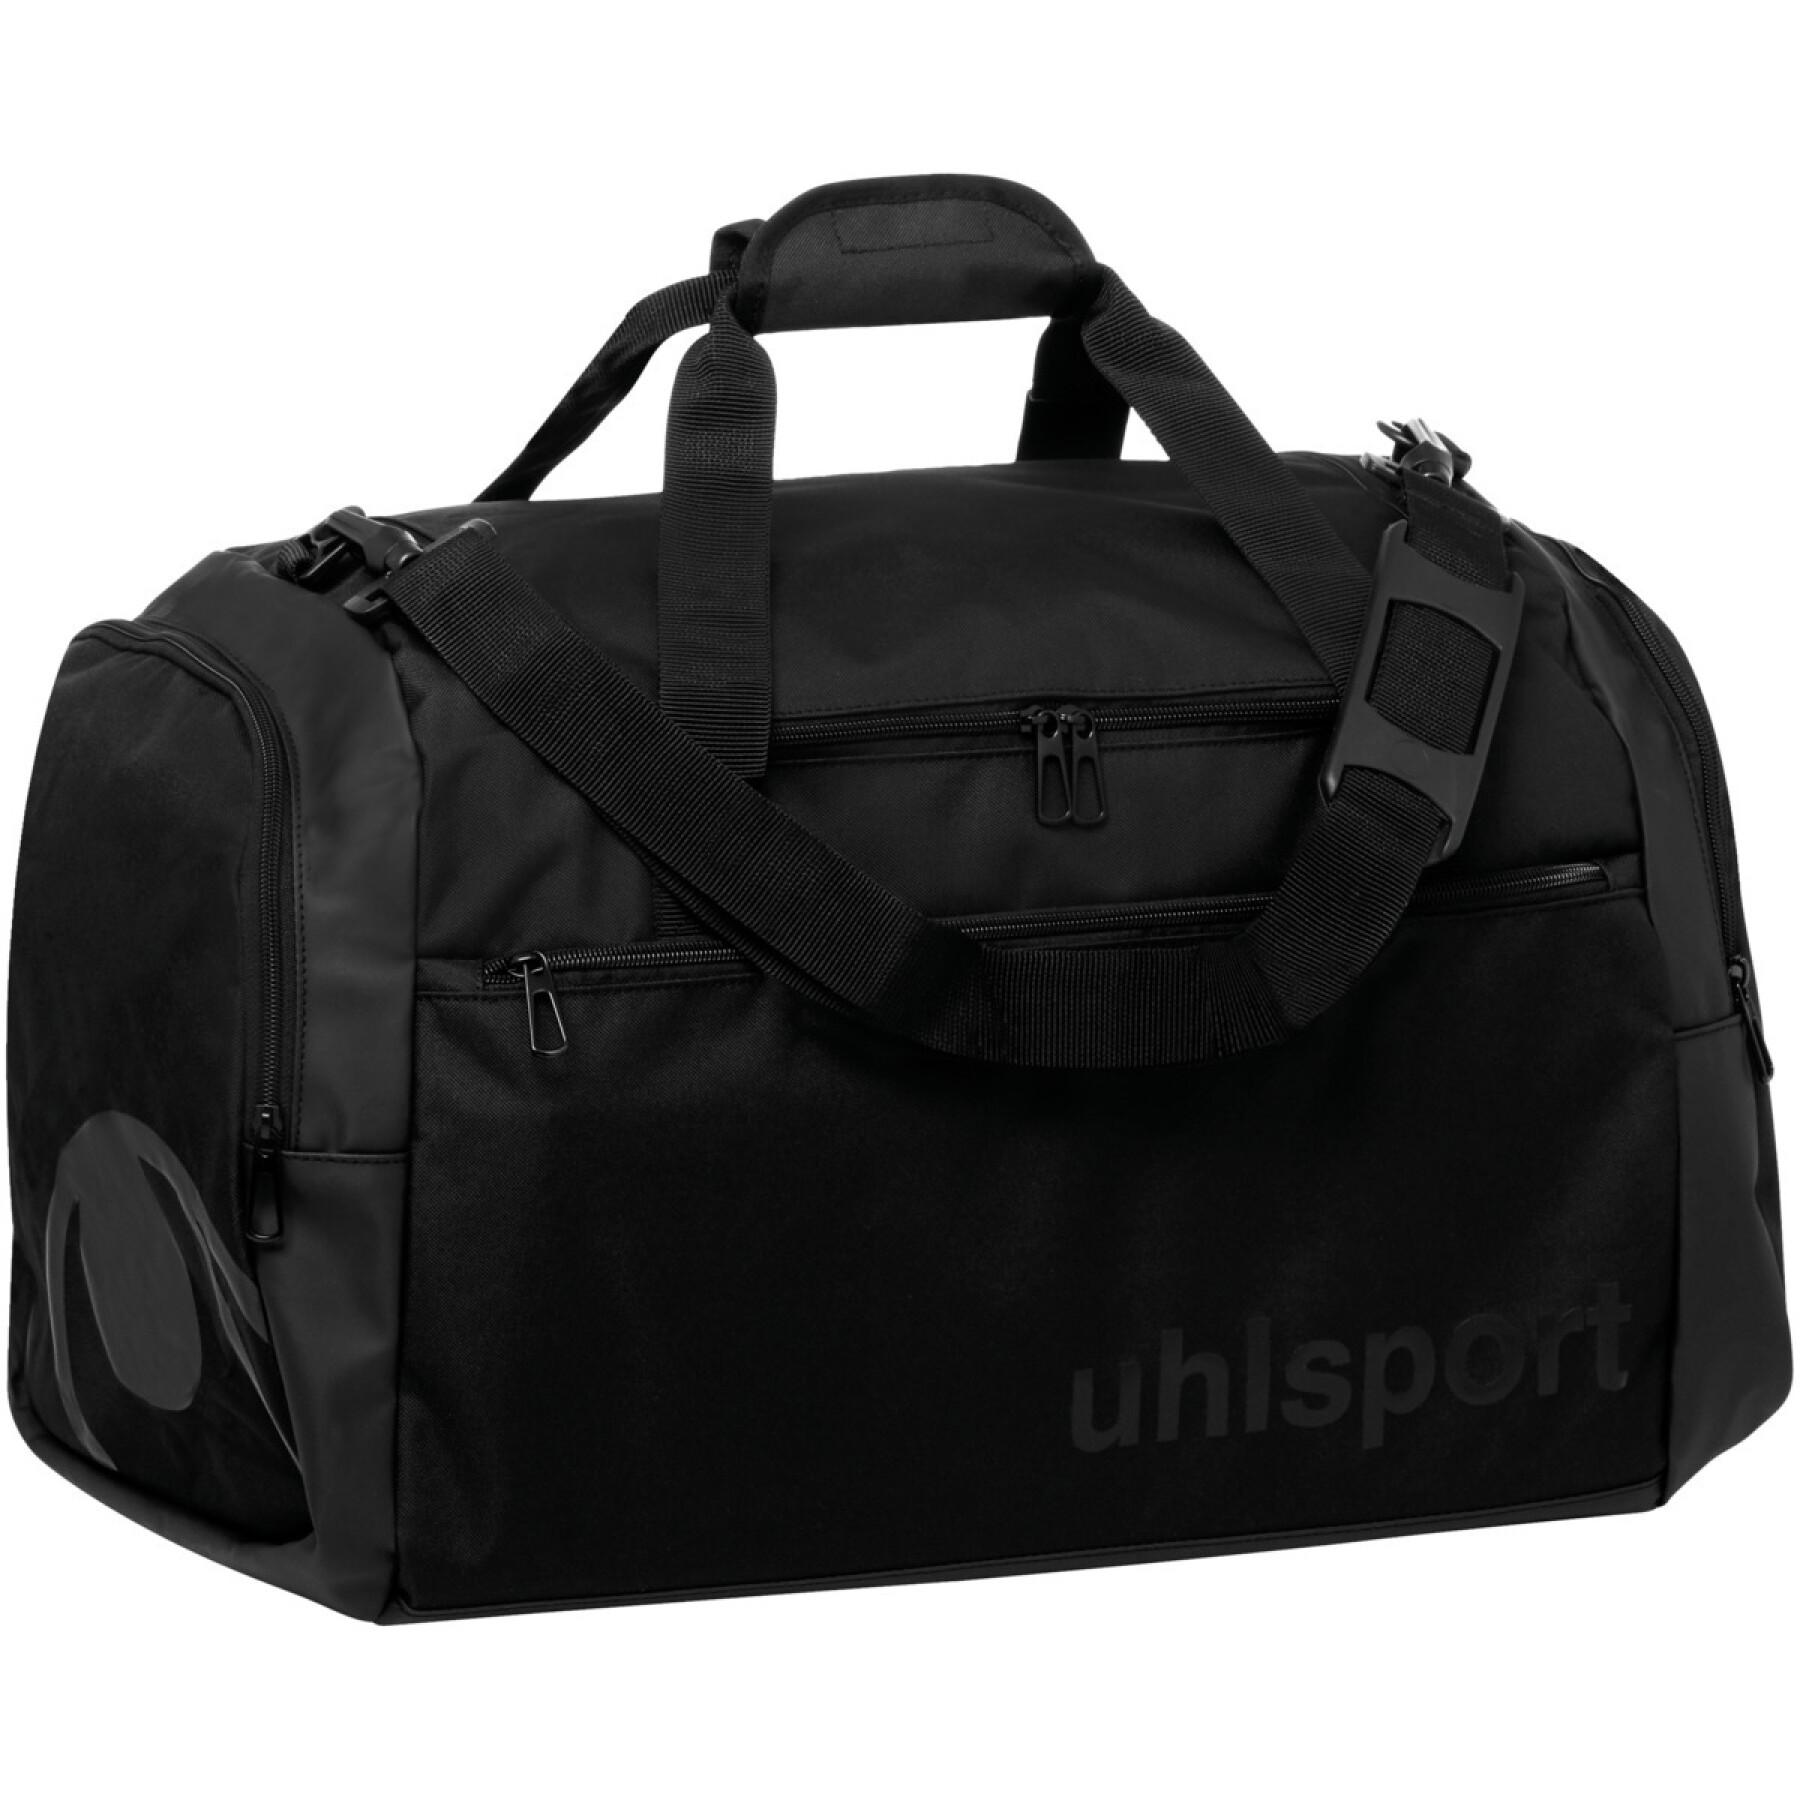 Sports bag Uhlsport Essential 50 L